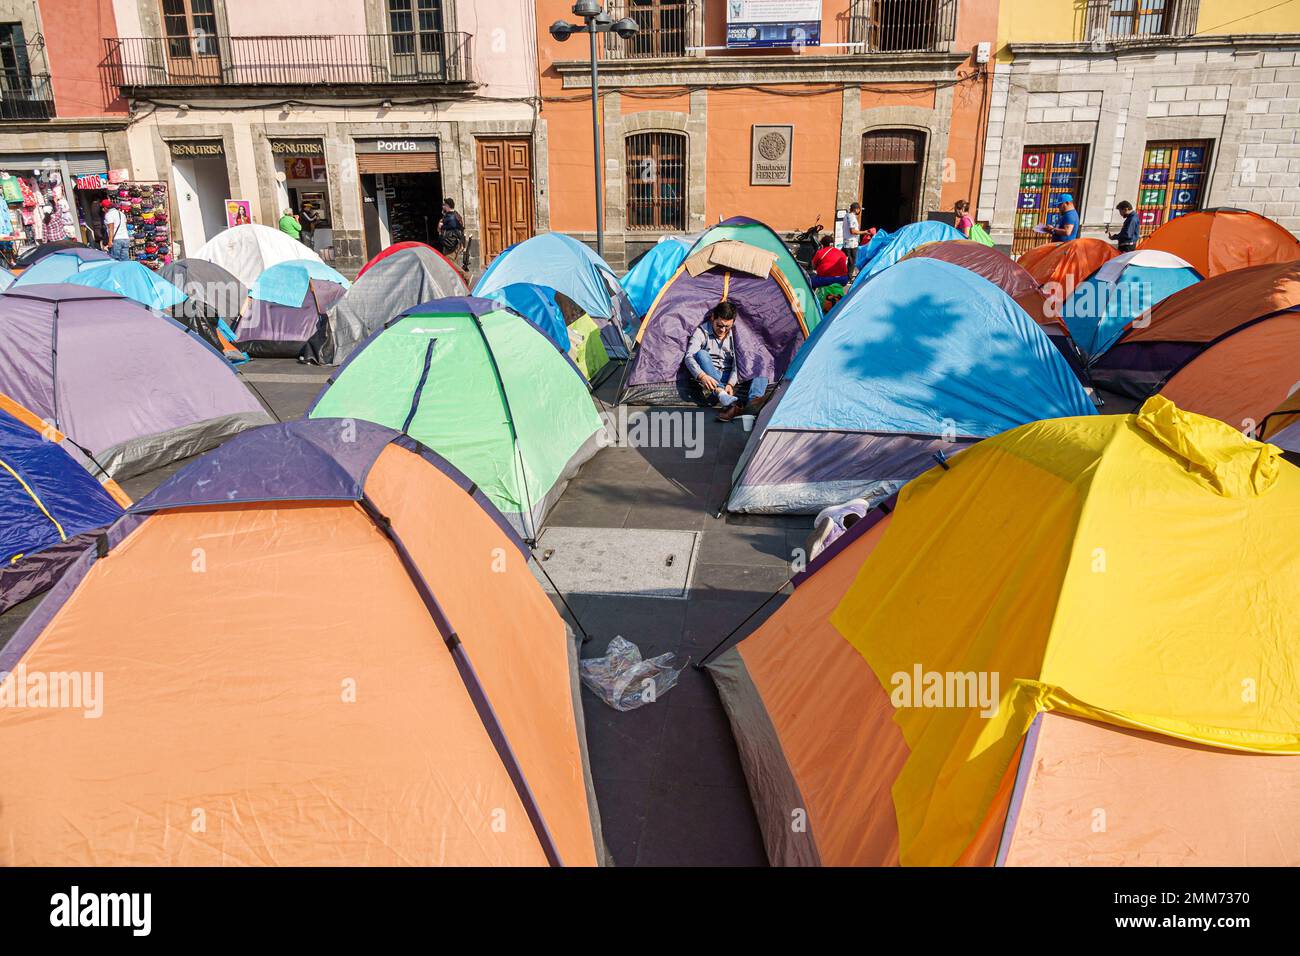 Mexico, centre historique, Historico Centro, Zocalo Plaza de la Constitucion, enseignants enseignants éducateurs protestent camping tentes dormir-dans la démonstration Banque D'Images